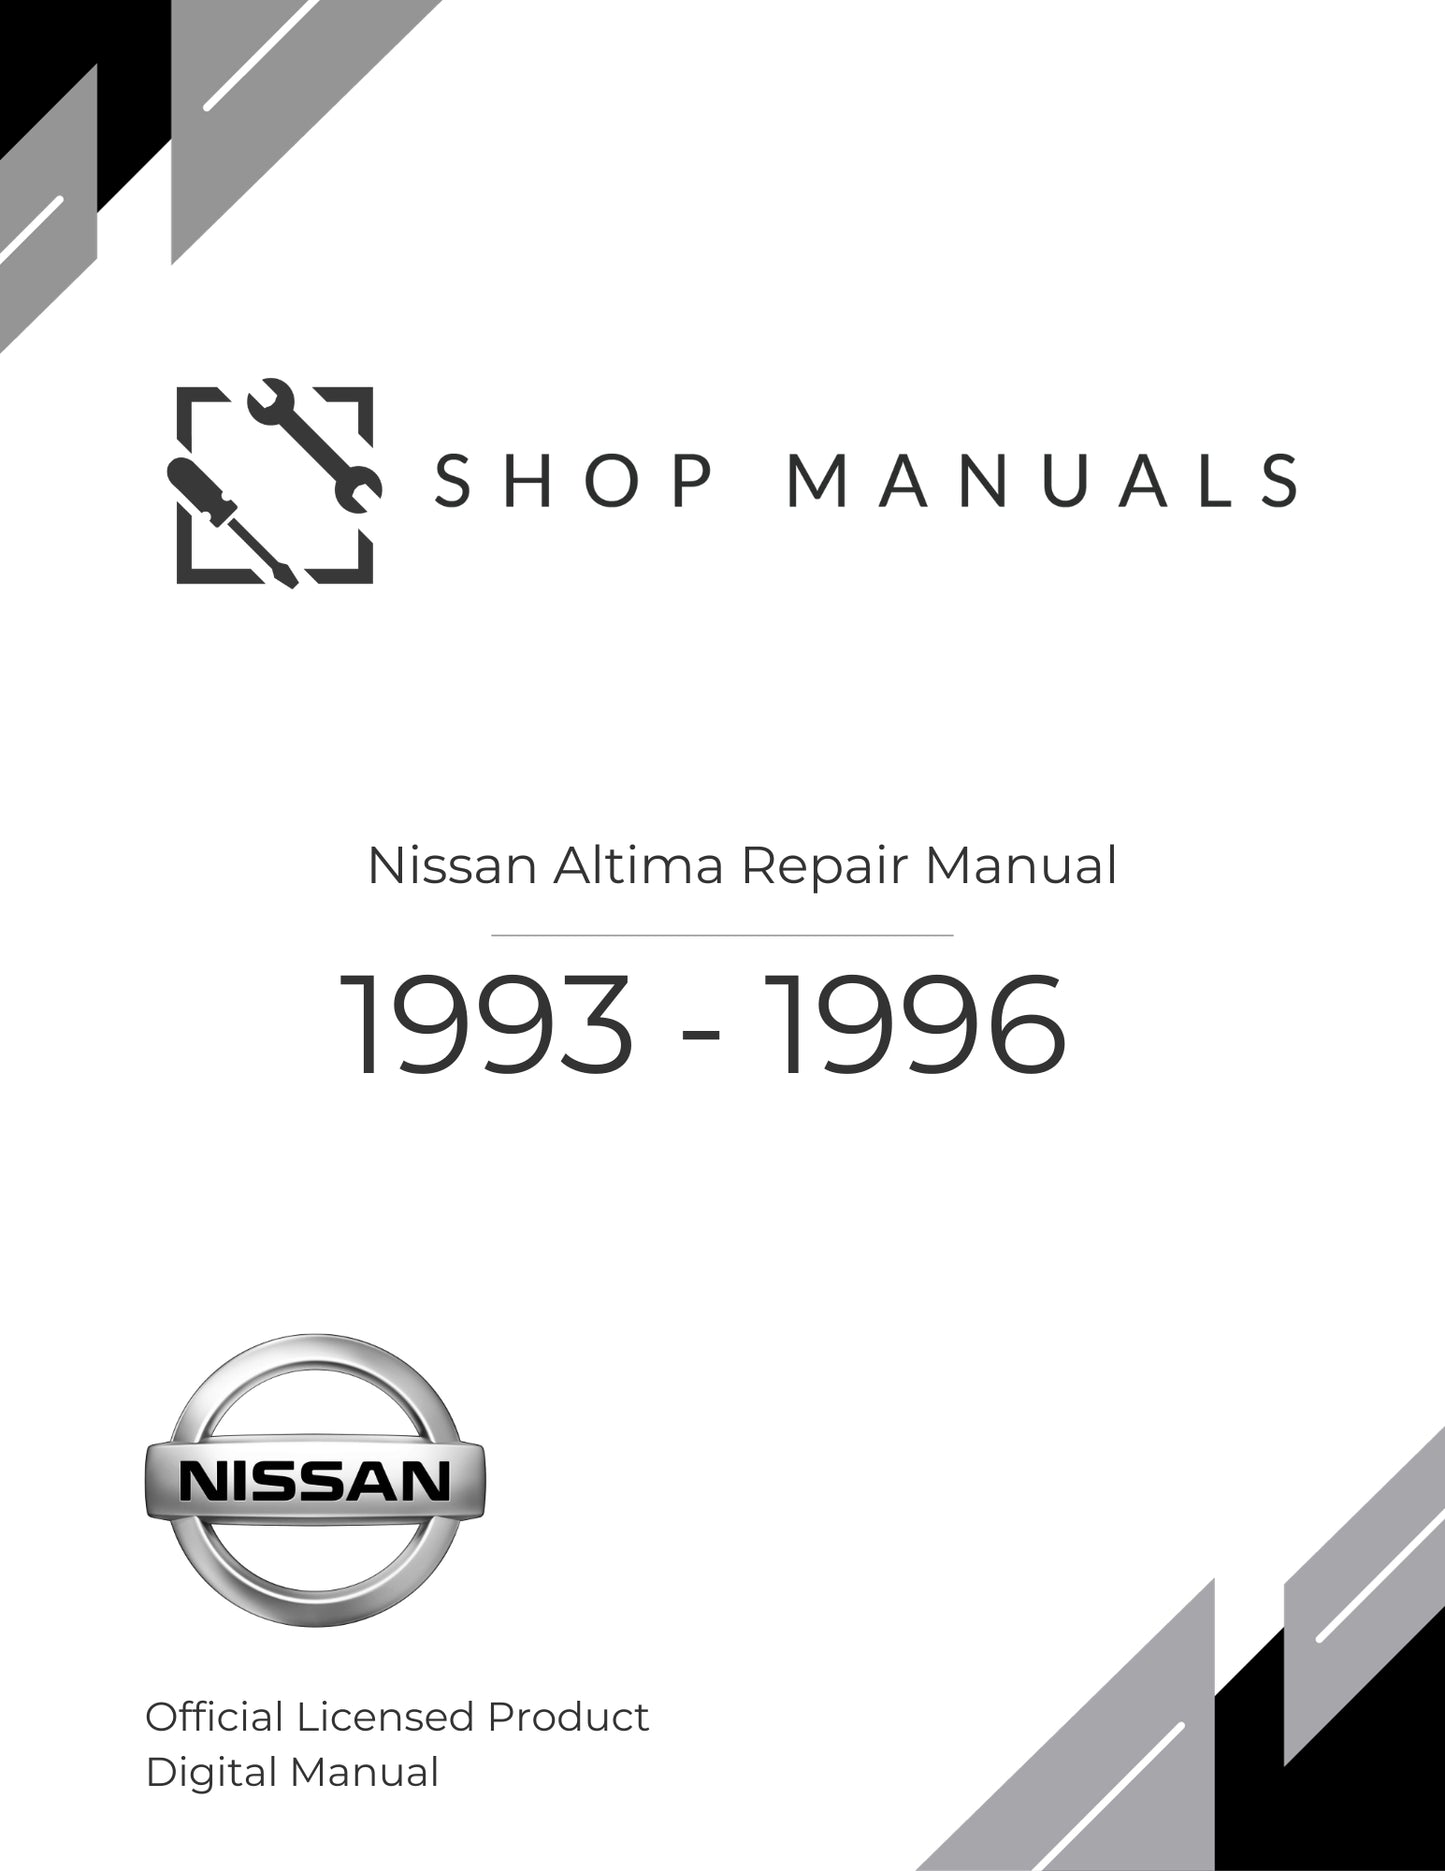 1993 - 1996 Nissan Altima Repair Manual